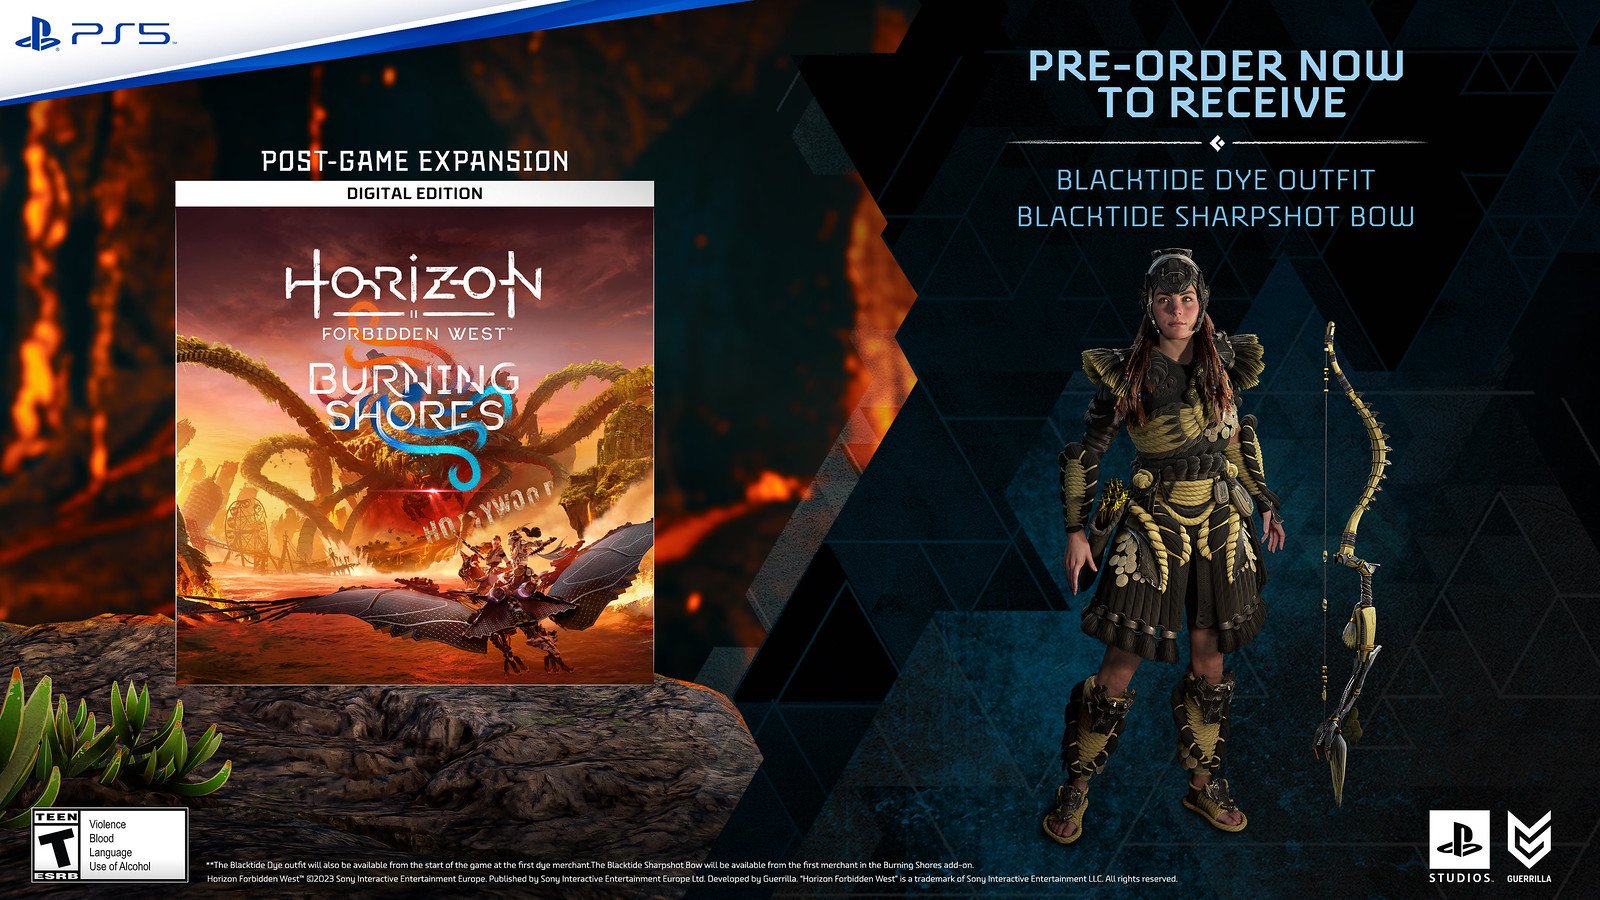 Horizon Forbidden West: Burning Shores DLC Announced, Exclusive to